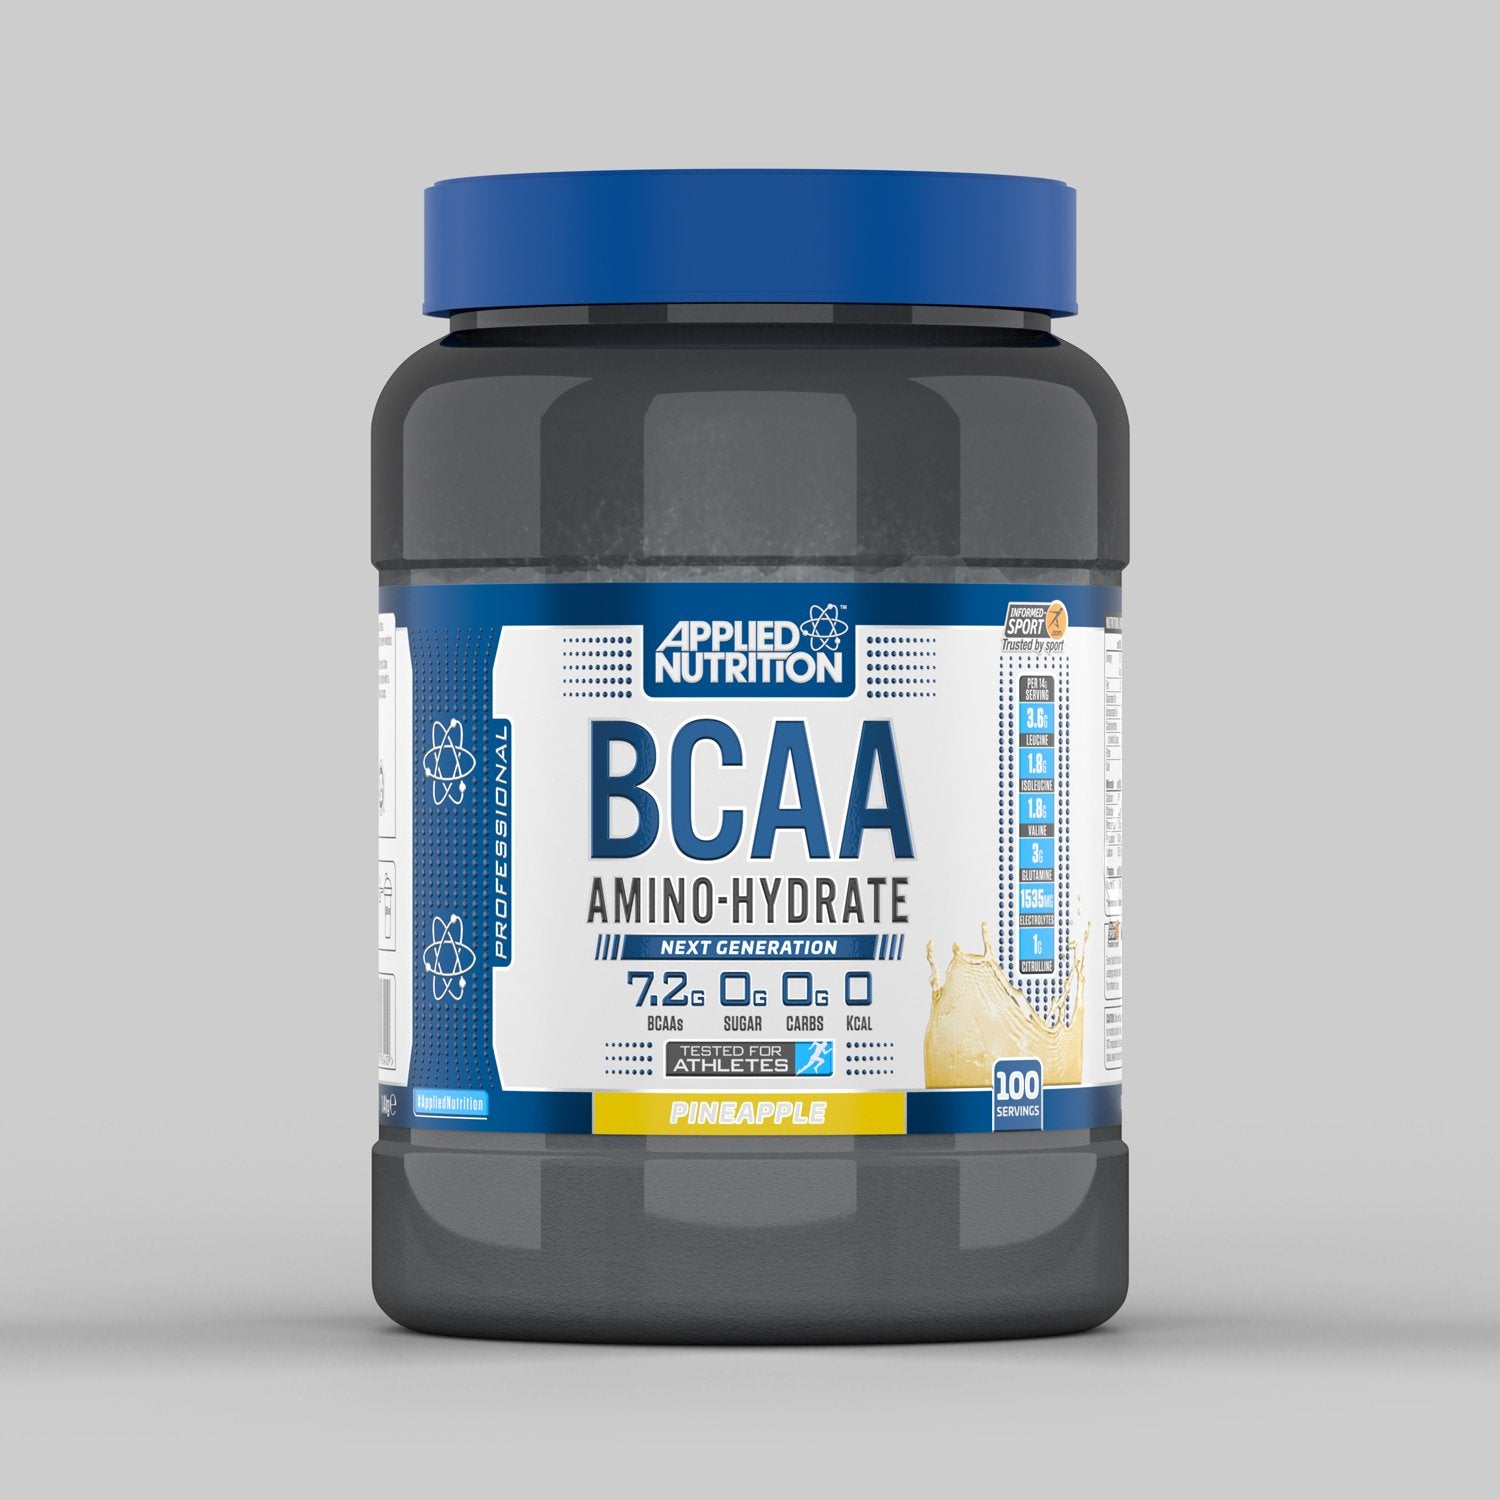 BCAA Amino-Hydrate